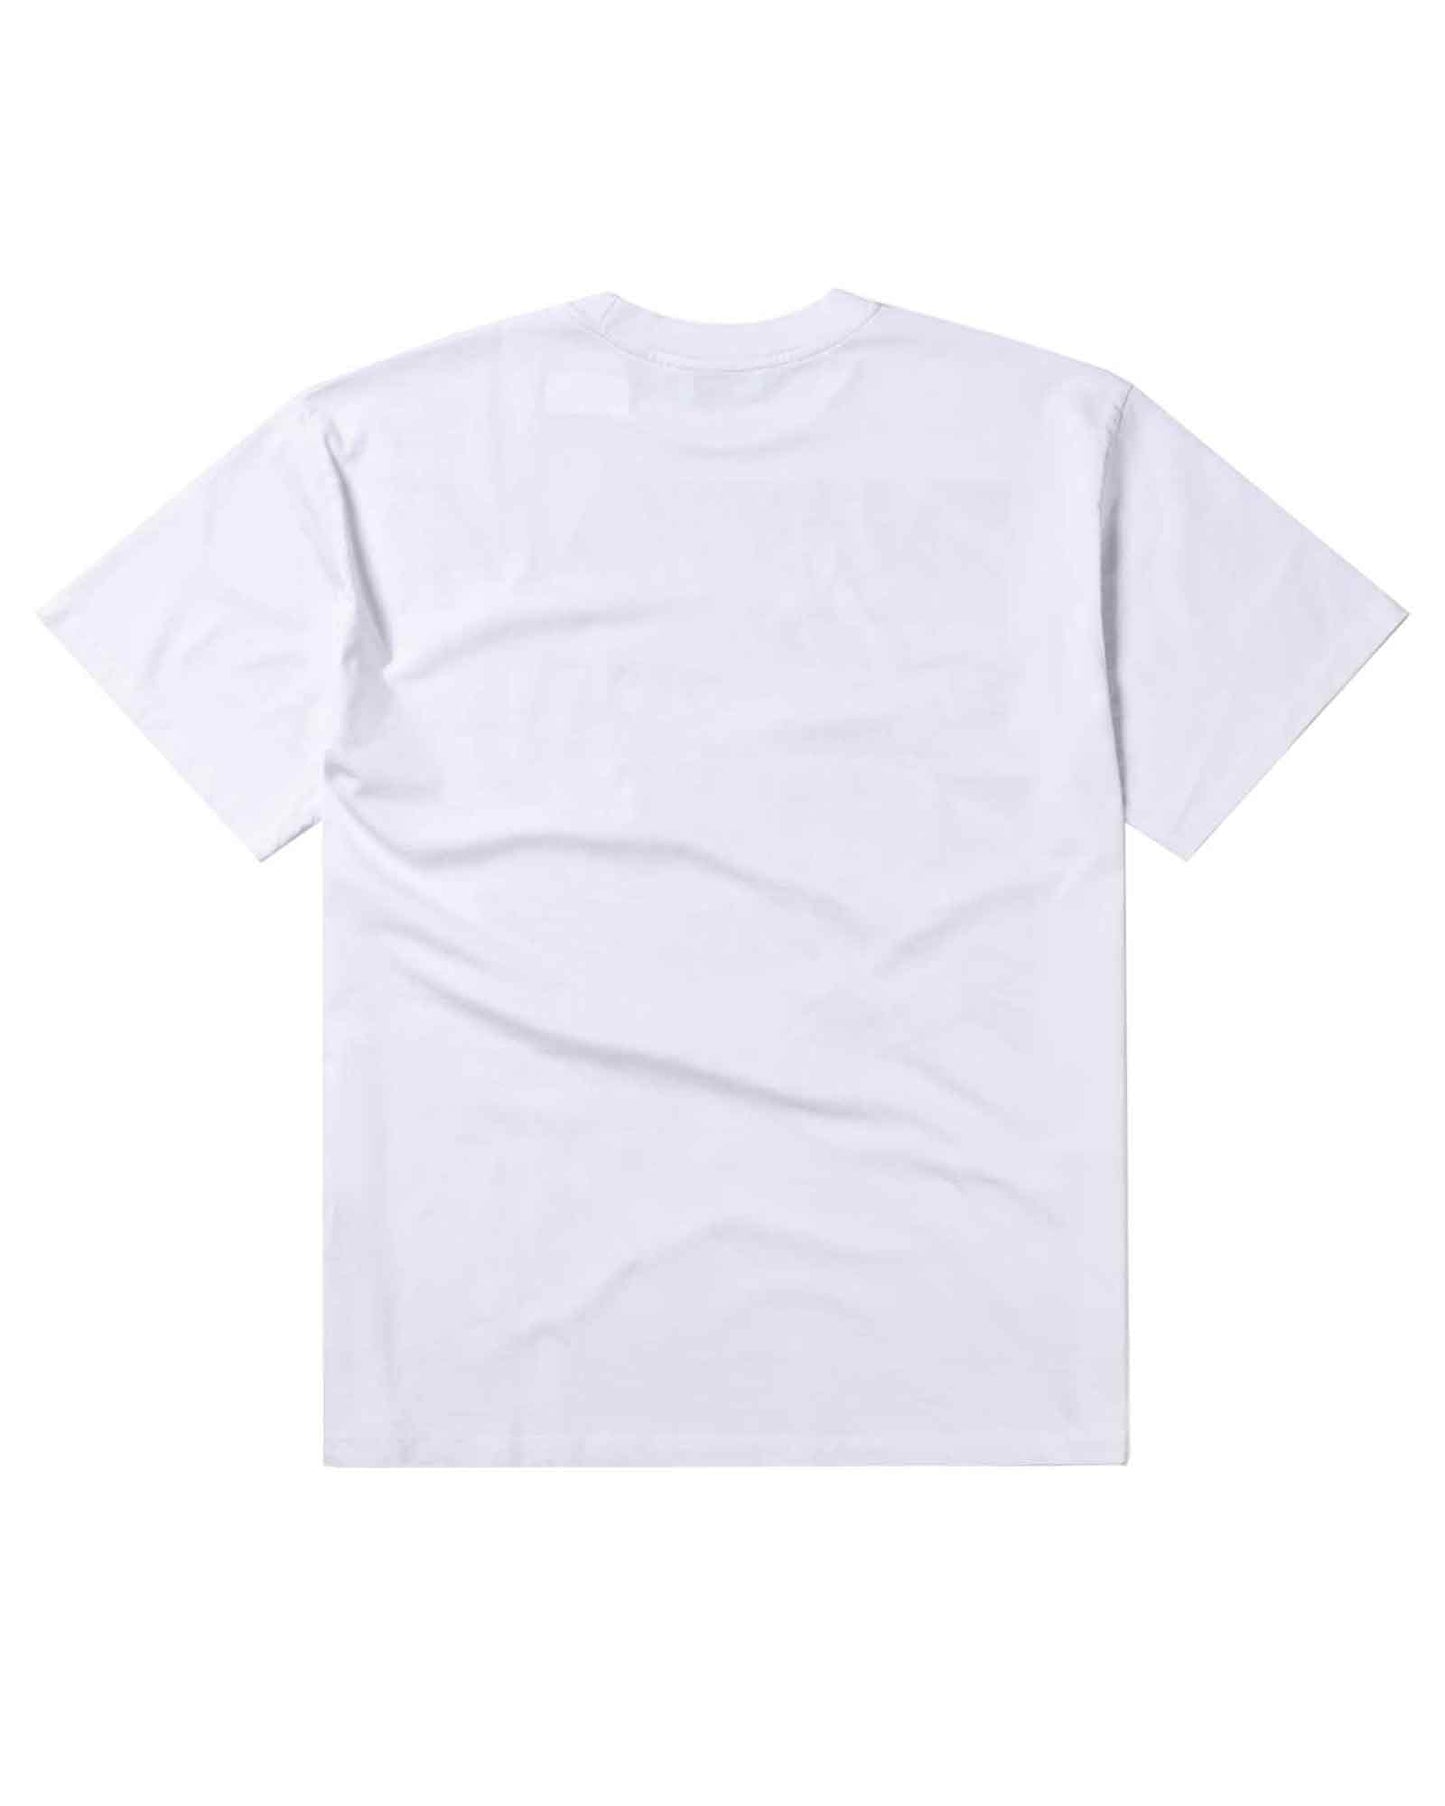 アリーズ/Connecting SS Tee/Tシャツ/White